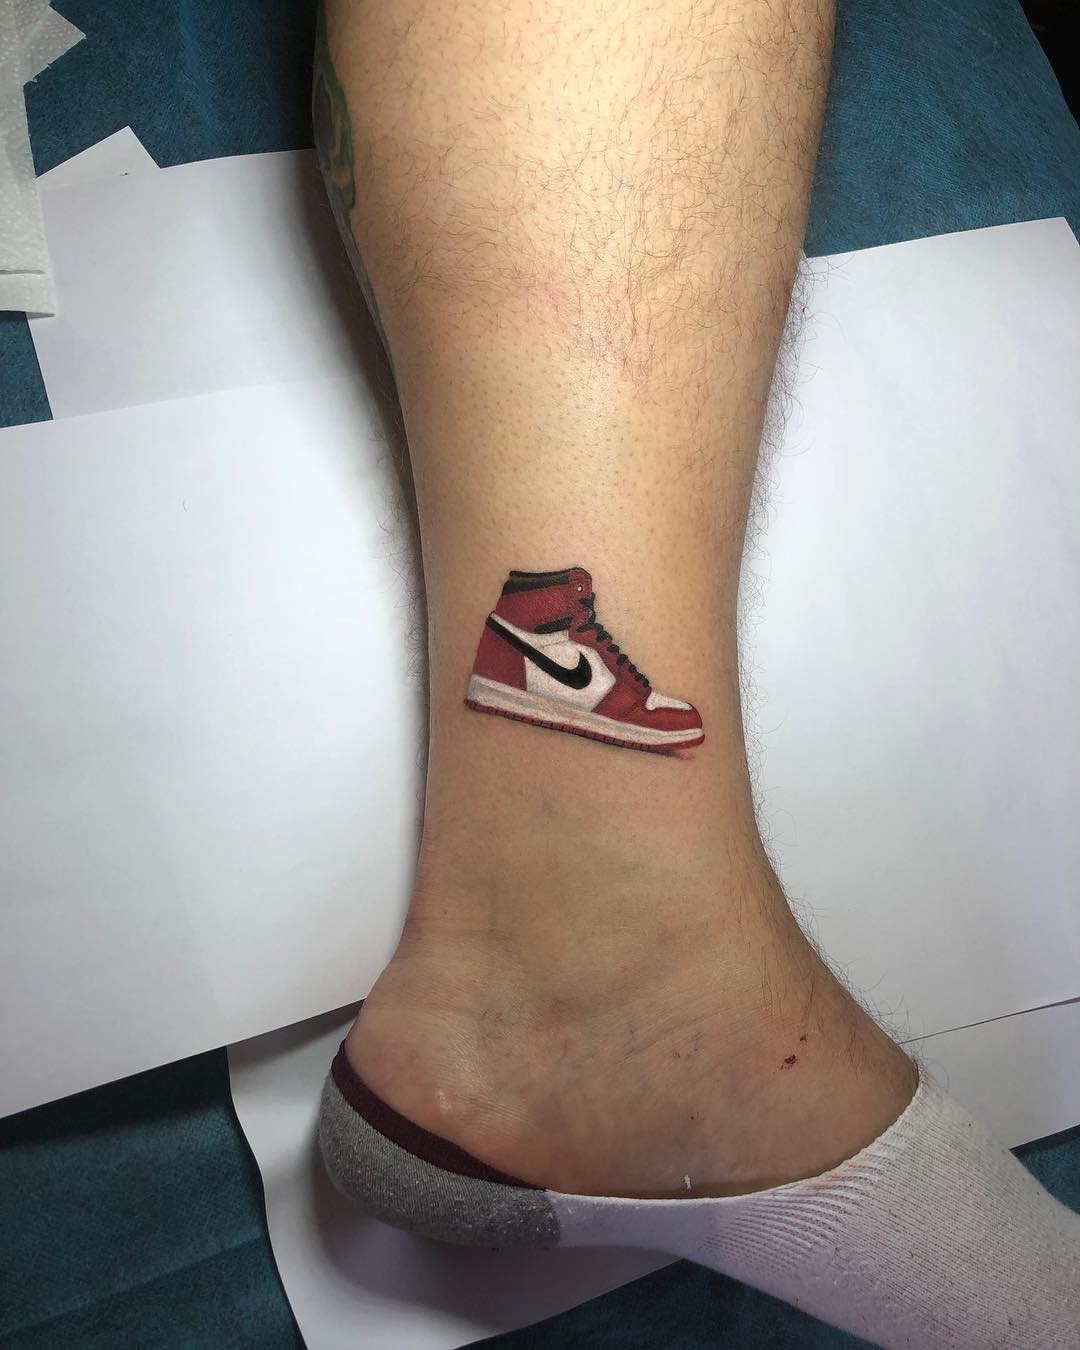 Josh Chain en Twitter: "Tattoo zapatillas Nike Jordan #Nike #Jordan #tattoo #joshchaintattoo #COLORES #tattooartist https://t.co/G2BWXwuu3J" Twitter